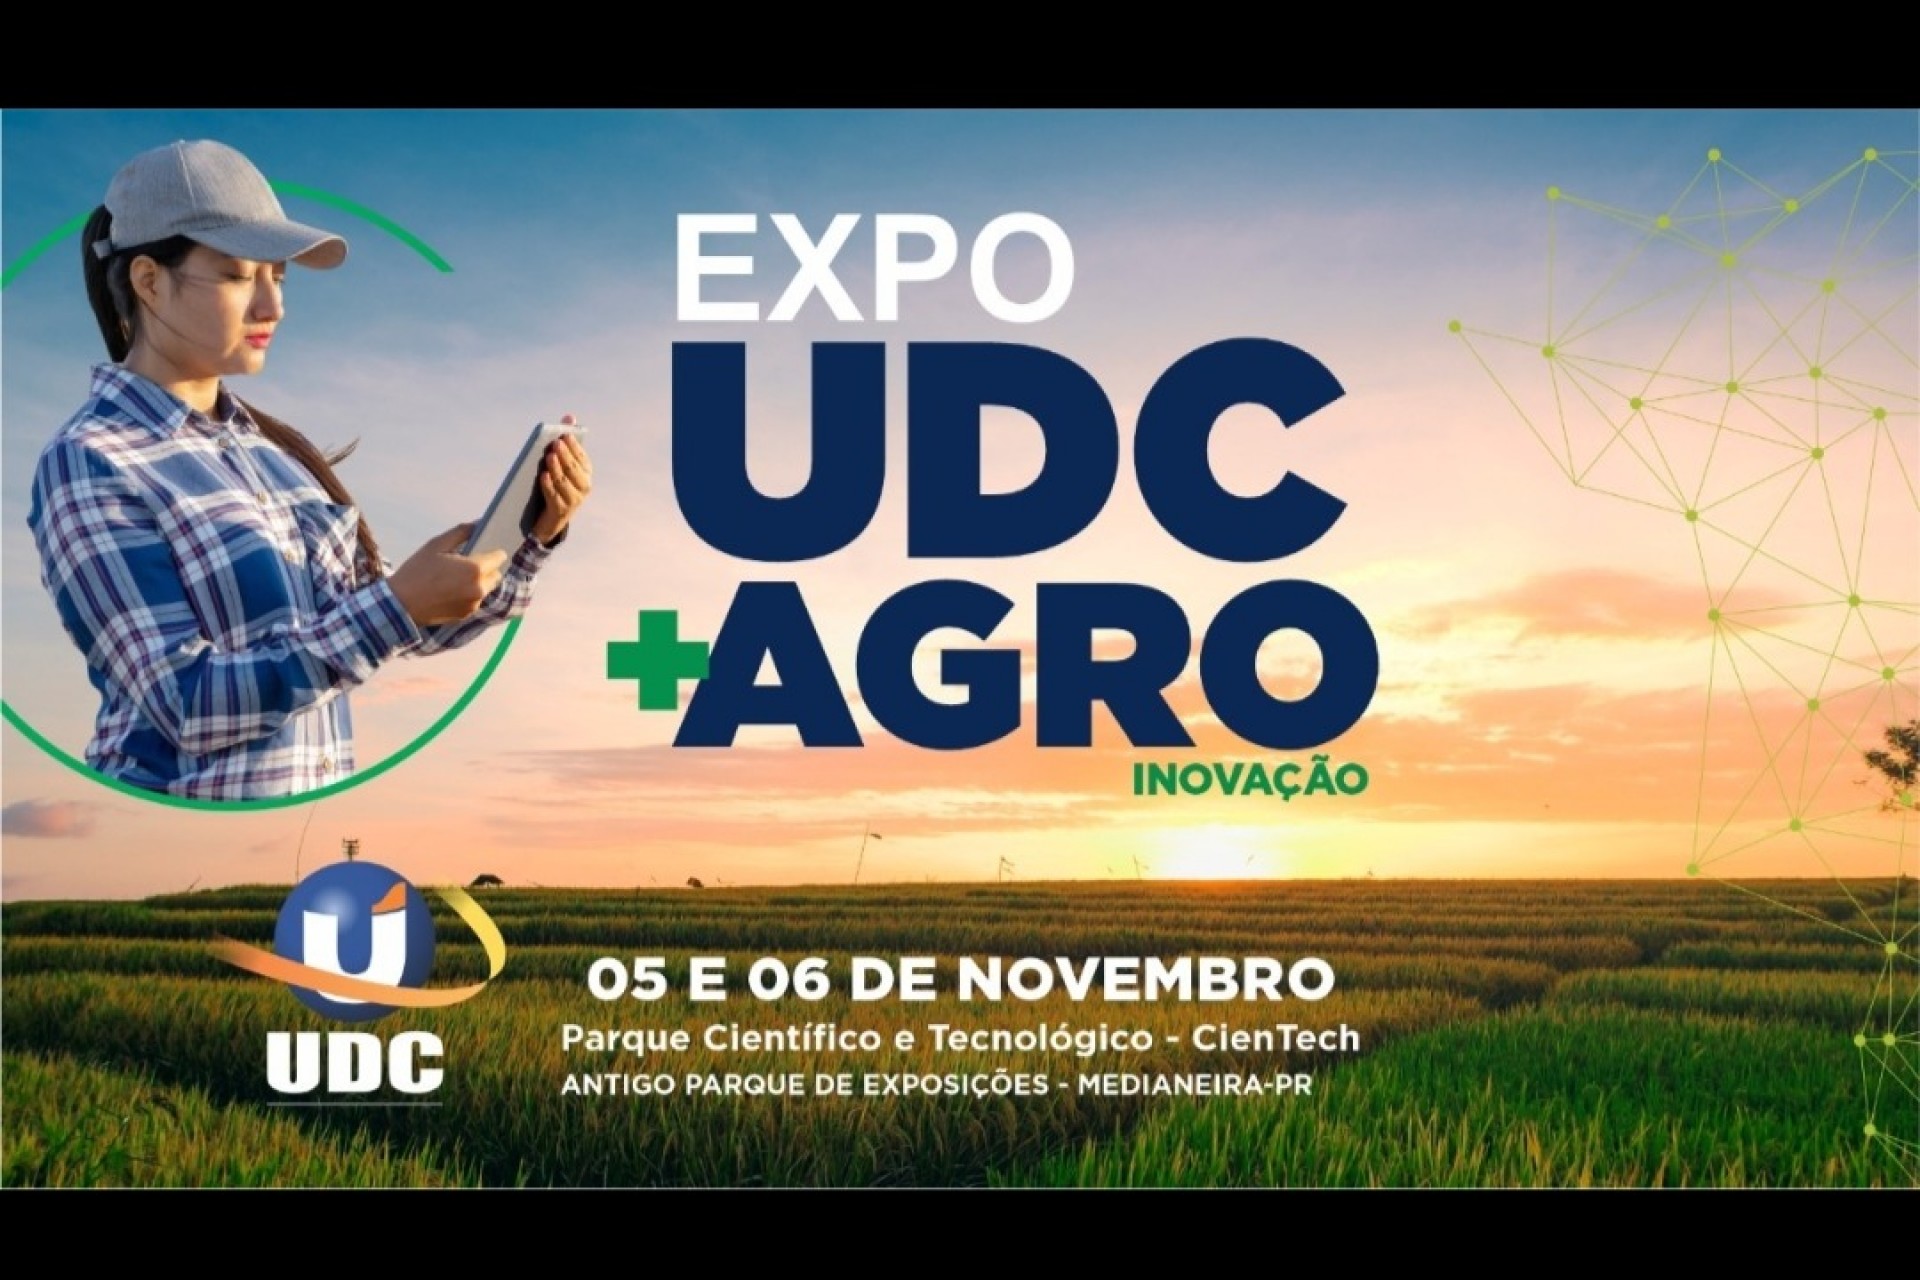 EXPO UDC + AGRO será neste final de semana no CienTech com entrada gratuita